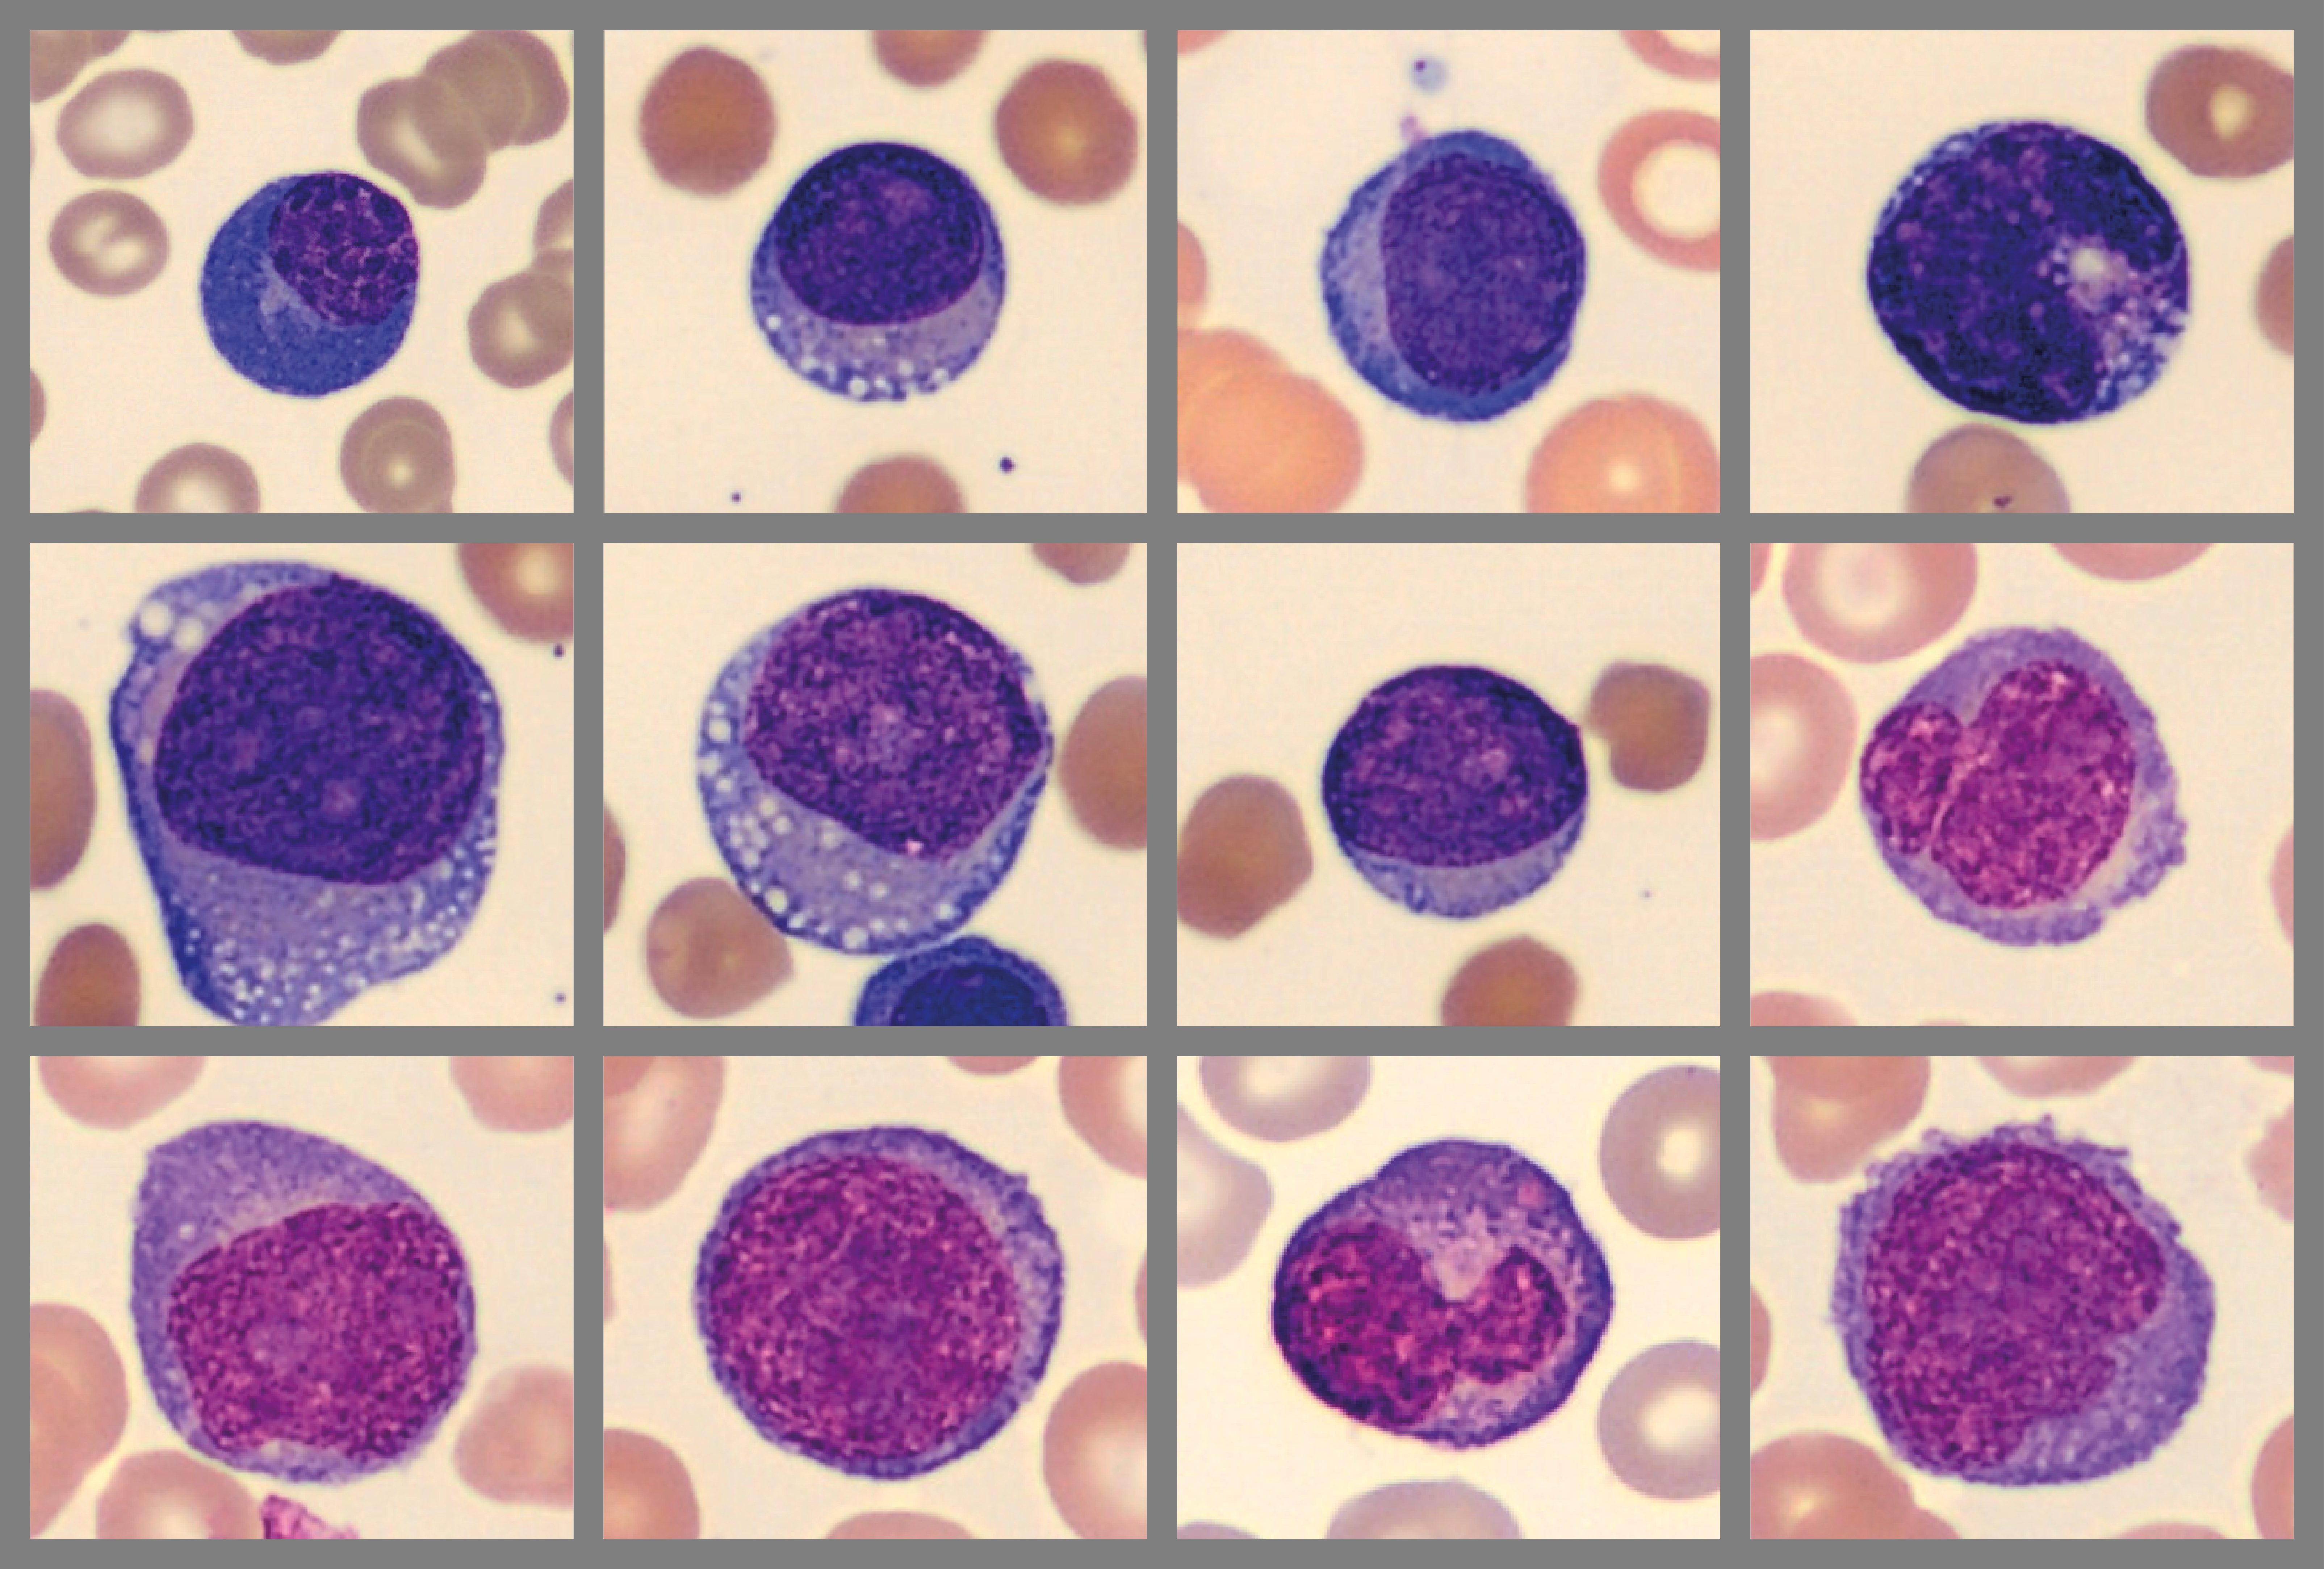 Composite cells illustrating patient case 4